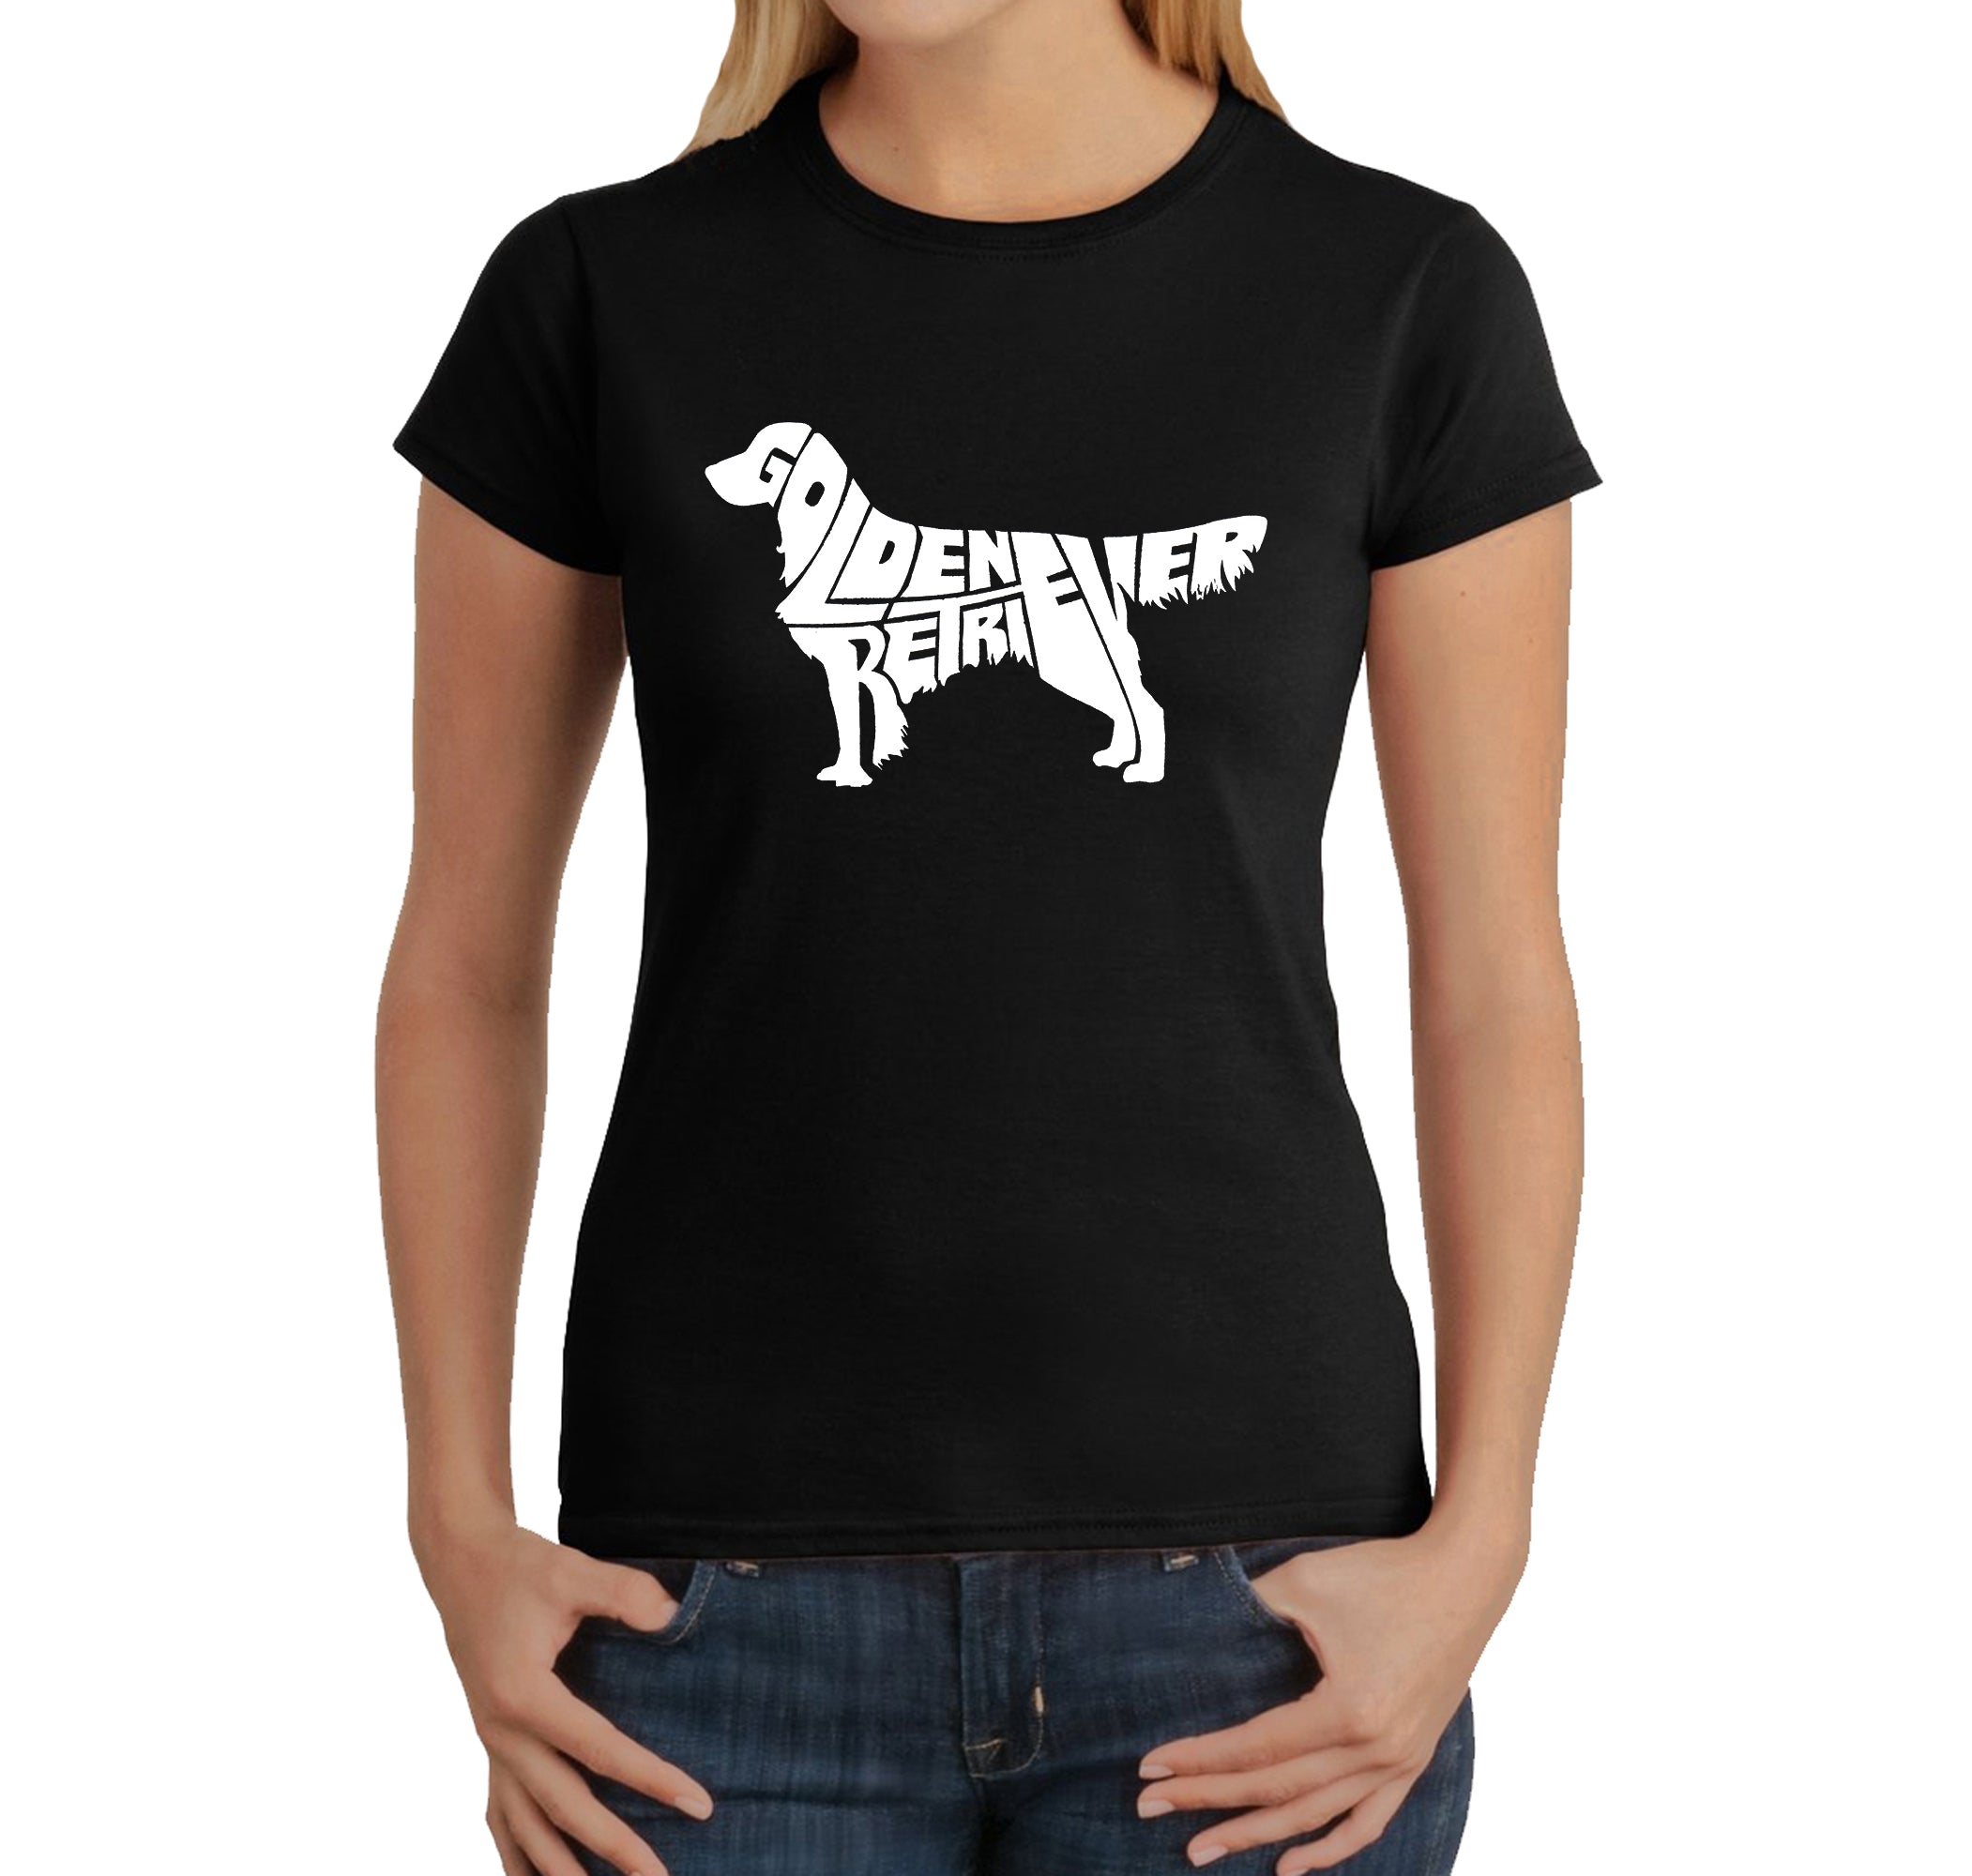 Golden Retriever - Women's Word Art T-Shirt - Black - Medium